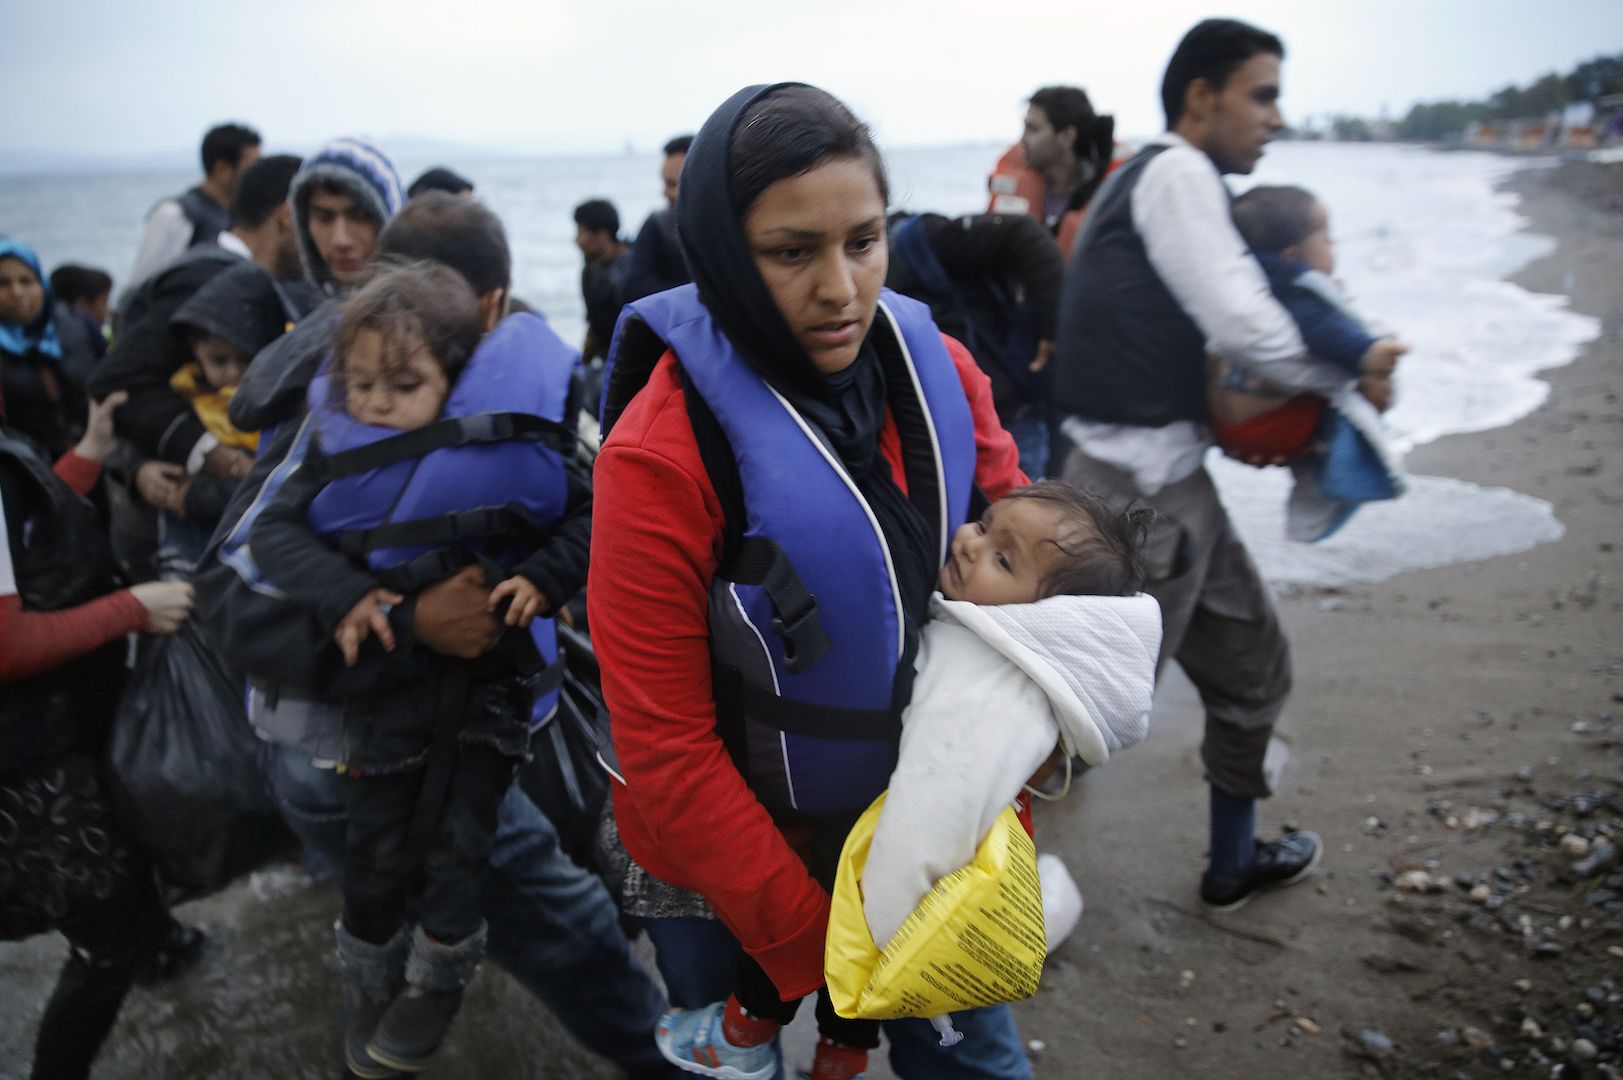 Наибольшее количество иммигрантов. Дети эмигранты. Мигранты в Европе. Итальянские мигранты.